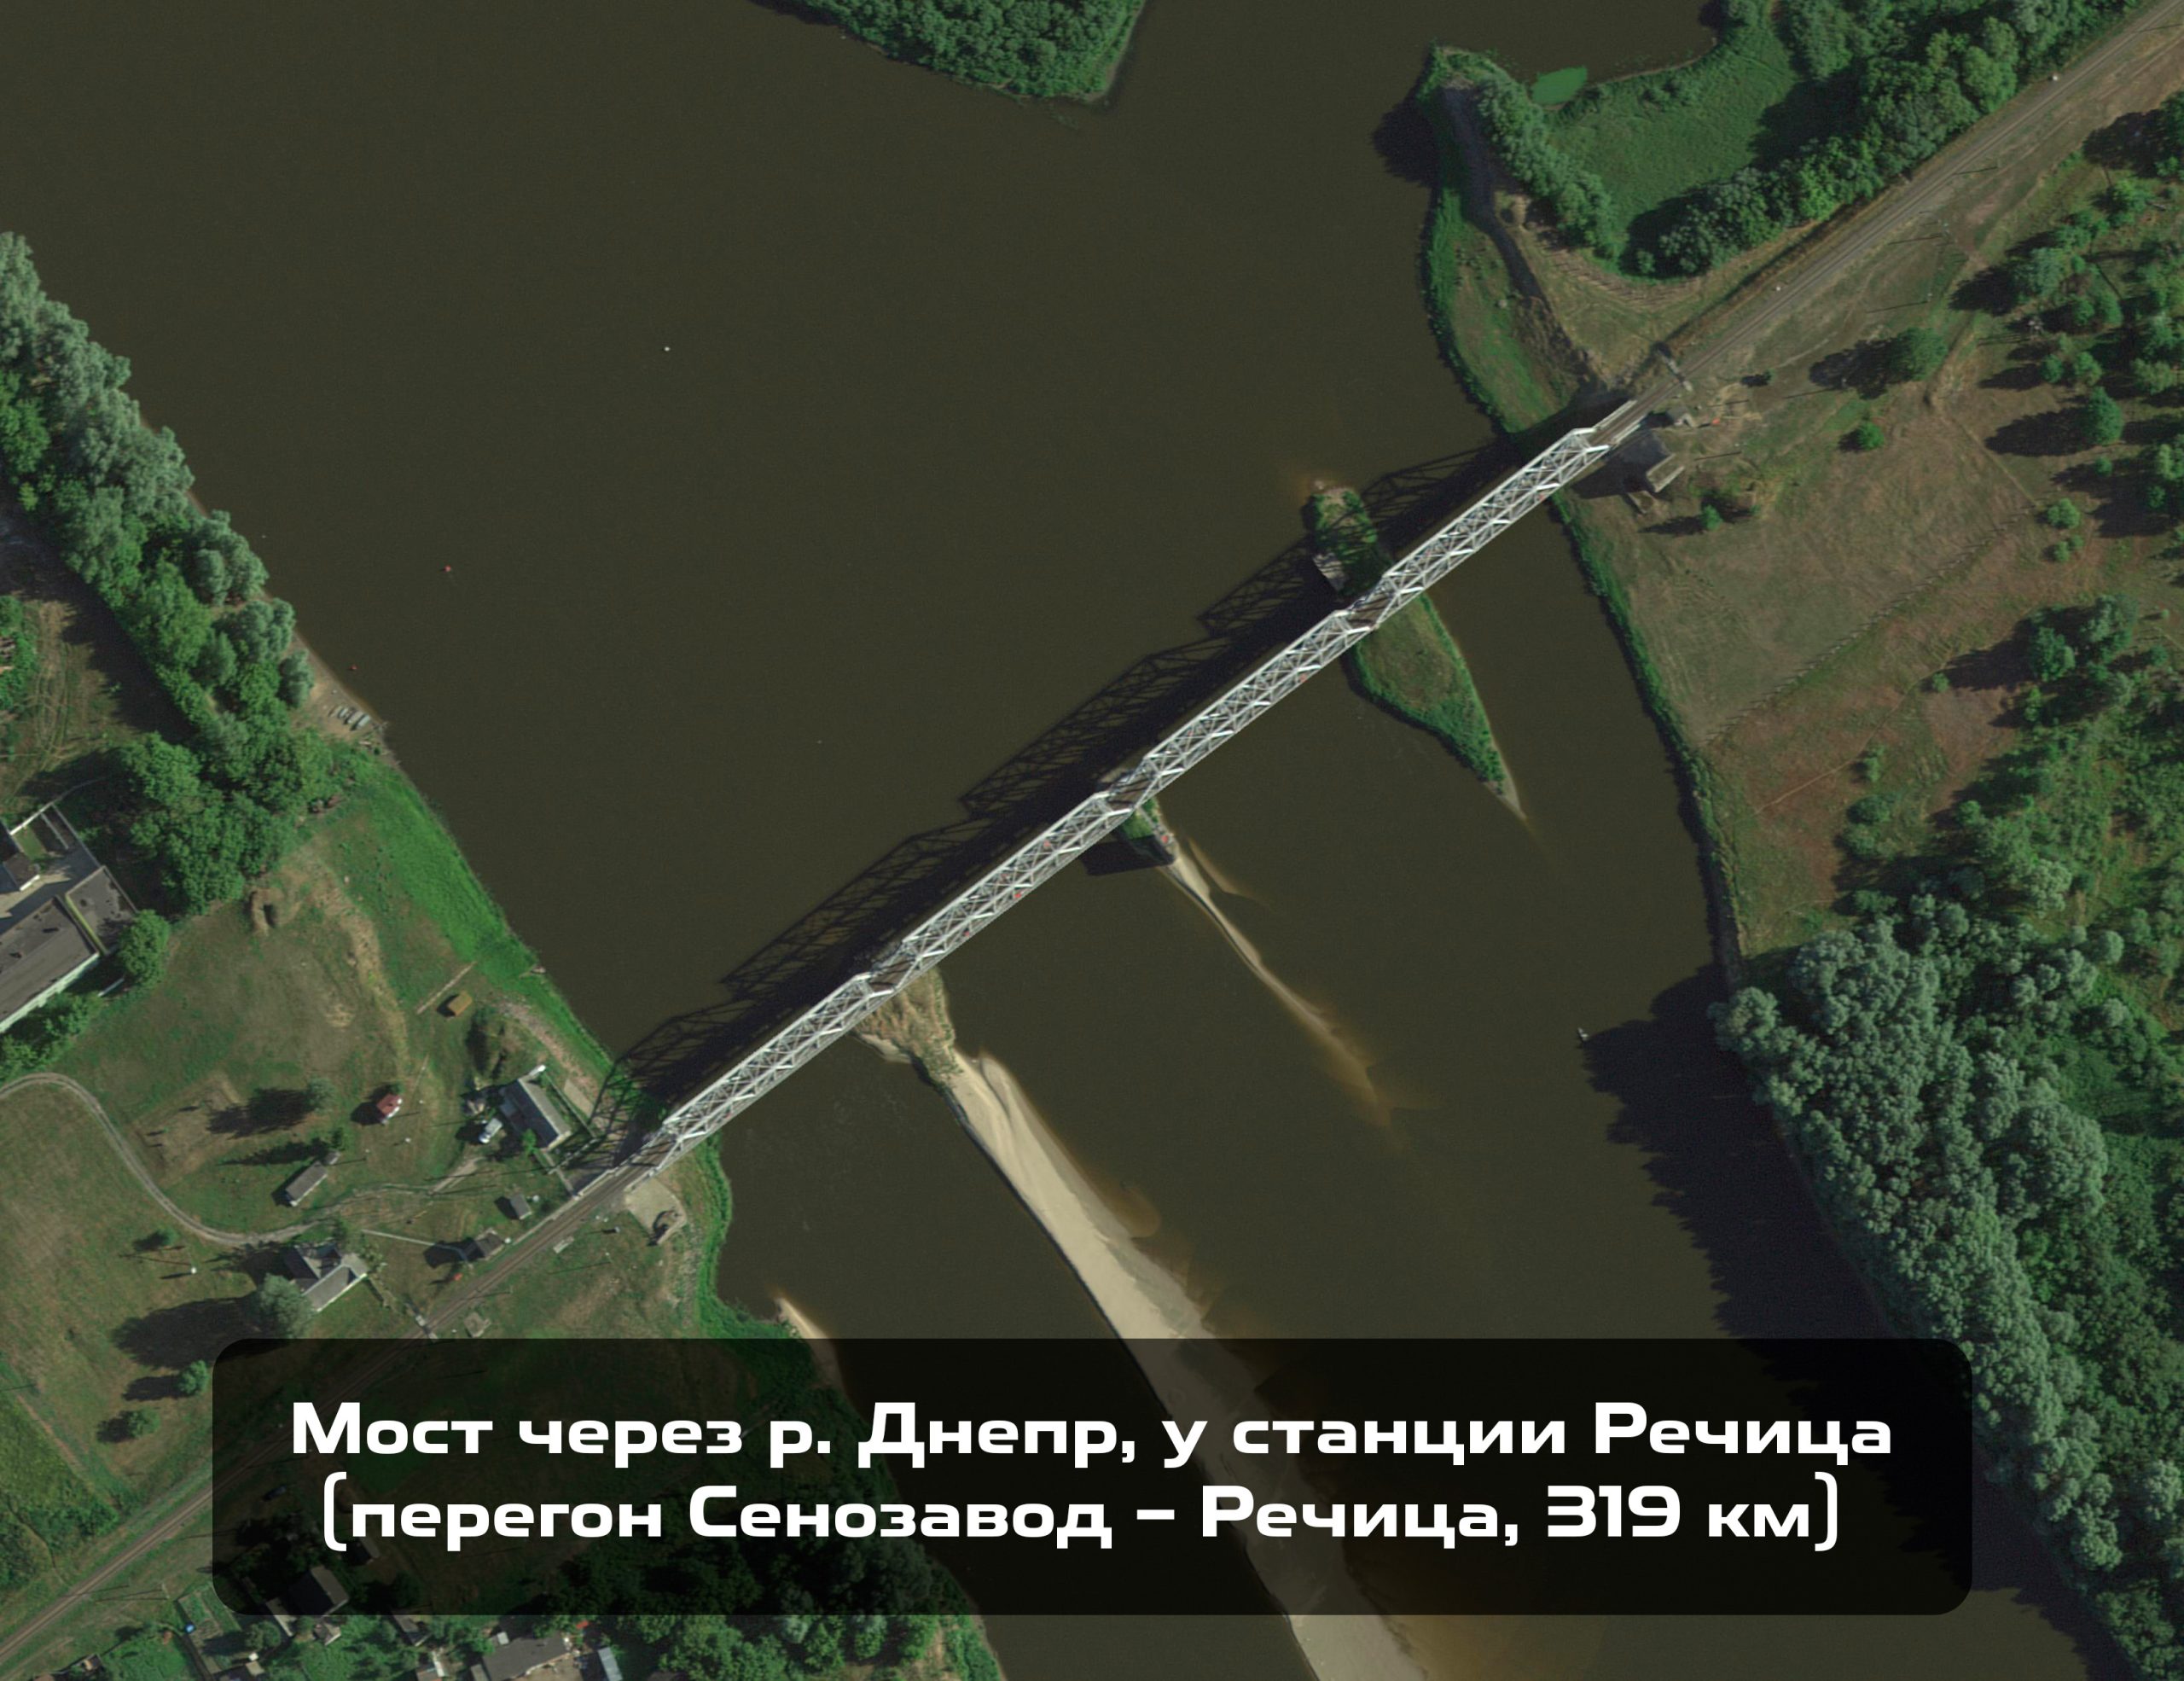 Мост через р. Днепр, у станции Речица (перегон Сенозавод – Речица, 319КМ)